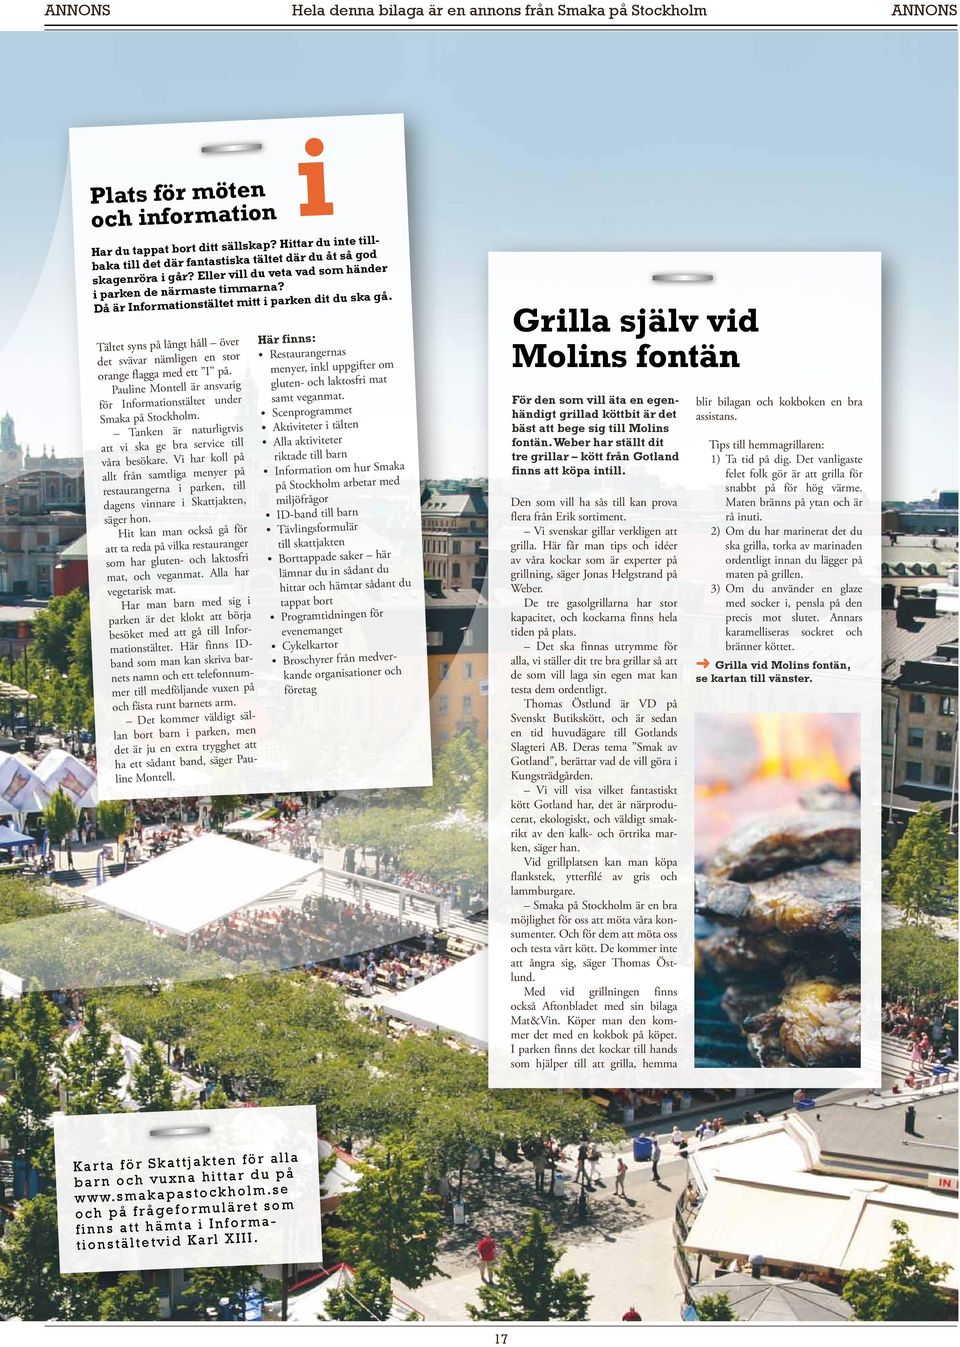 Tältet syns på långt håll över det svävar nämligen en stor orange flagga med ett I på. Krogar Pauline Montell är ansvarig för Informationstältet under Smaka på Stockholm.